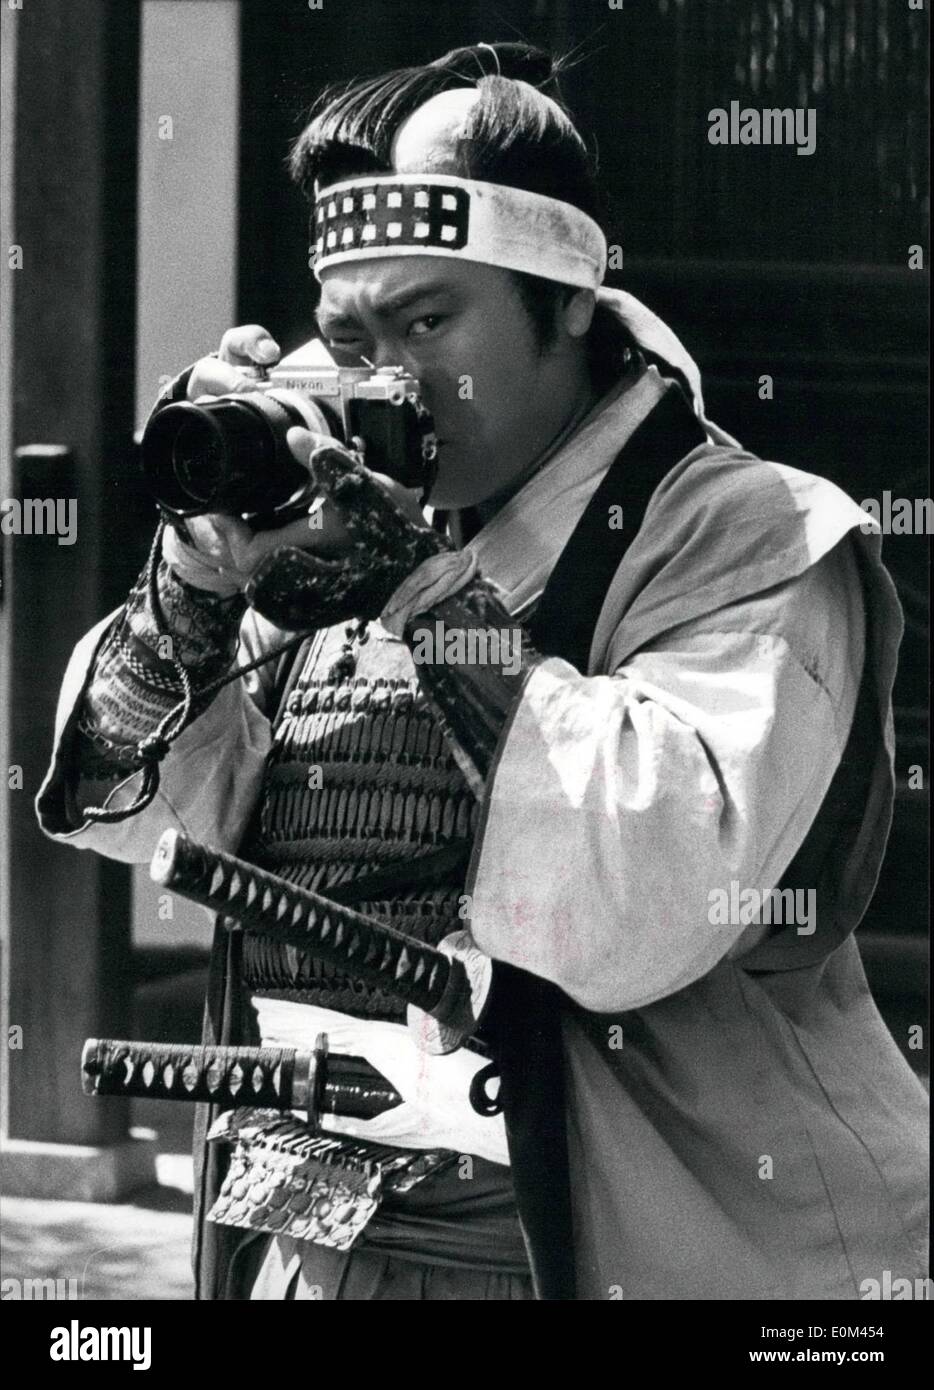 Giugno 06, 1953 - Il samurai e il singolo reflex: spade giapponesi- famosa per la loro rapida precisione sono visto qui scartato da ultimo giorno samurai per un altro strumento di precisione Made in Giappone la singola fotocamera reflex. Infatti, l'occasione chiamato per entrambe le spade e le telecamere come questa foto scattata durante la localizzazione tiri di un inglese/Stati Uniti co-produzione chiamato ''l'Bushido Blade'', un'avventura storica movie centrato attorno al landin di Capt. Perry e il suo 'navi nero' in shimoda 125 anni fa, che ha portato alla apertura del Giappone in Occidente dopo secoli di splendido isolamento. Foto Stock